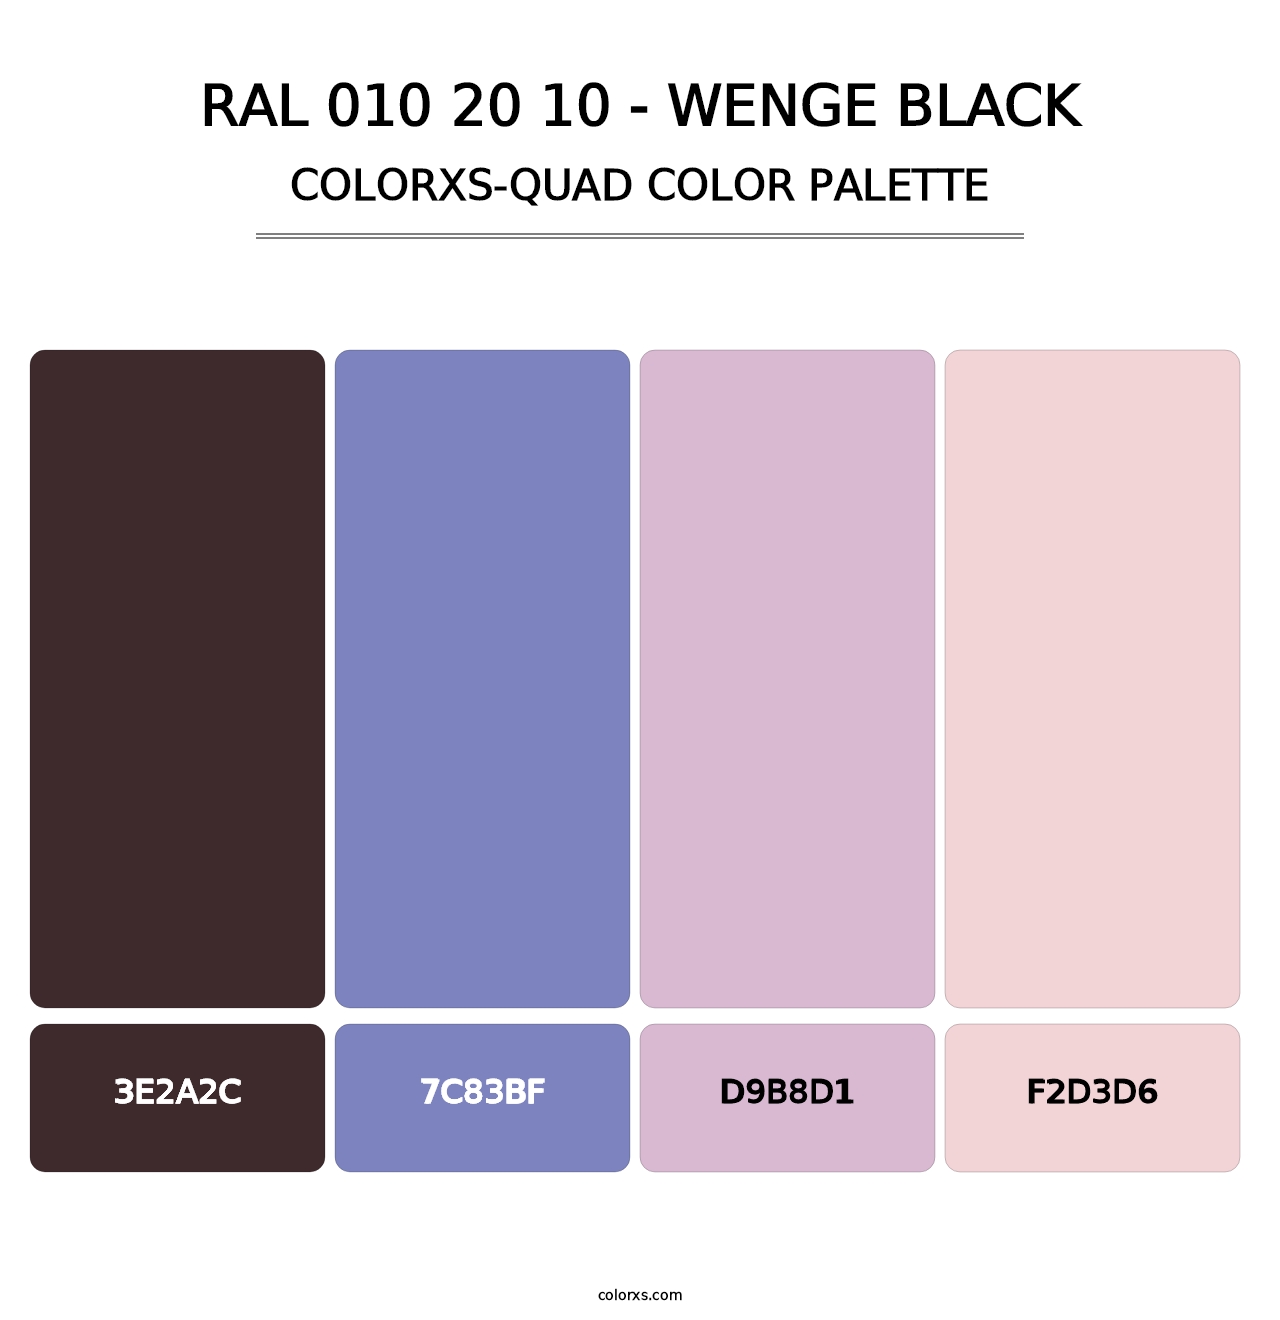 RAL 010 20 10 - Wenge Black - Colorxs Quad Palette